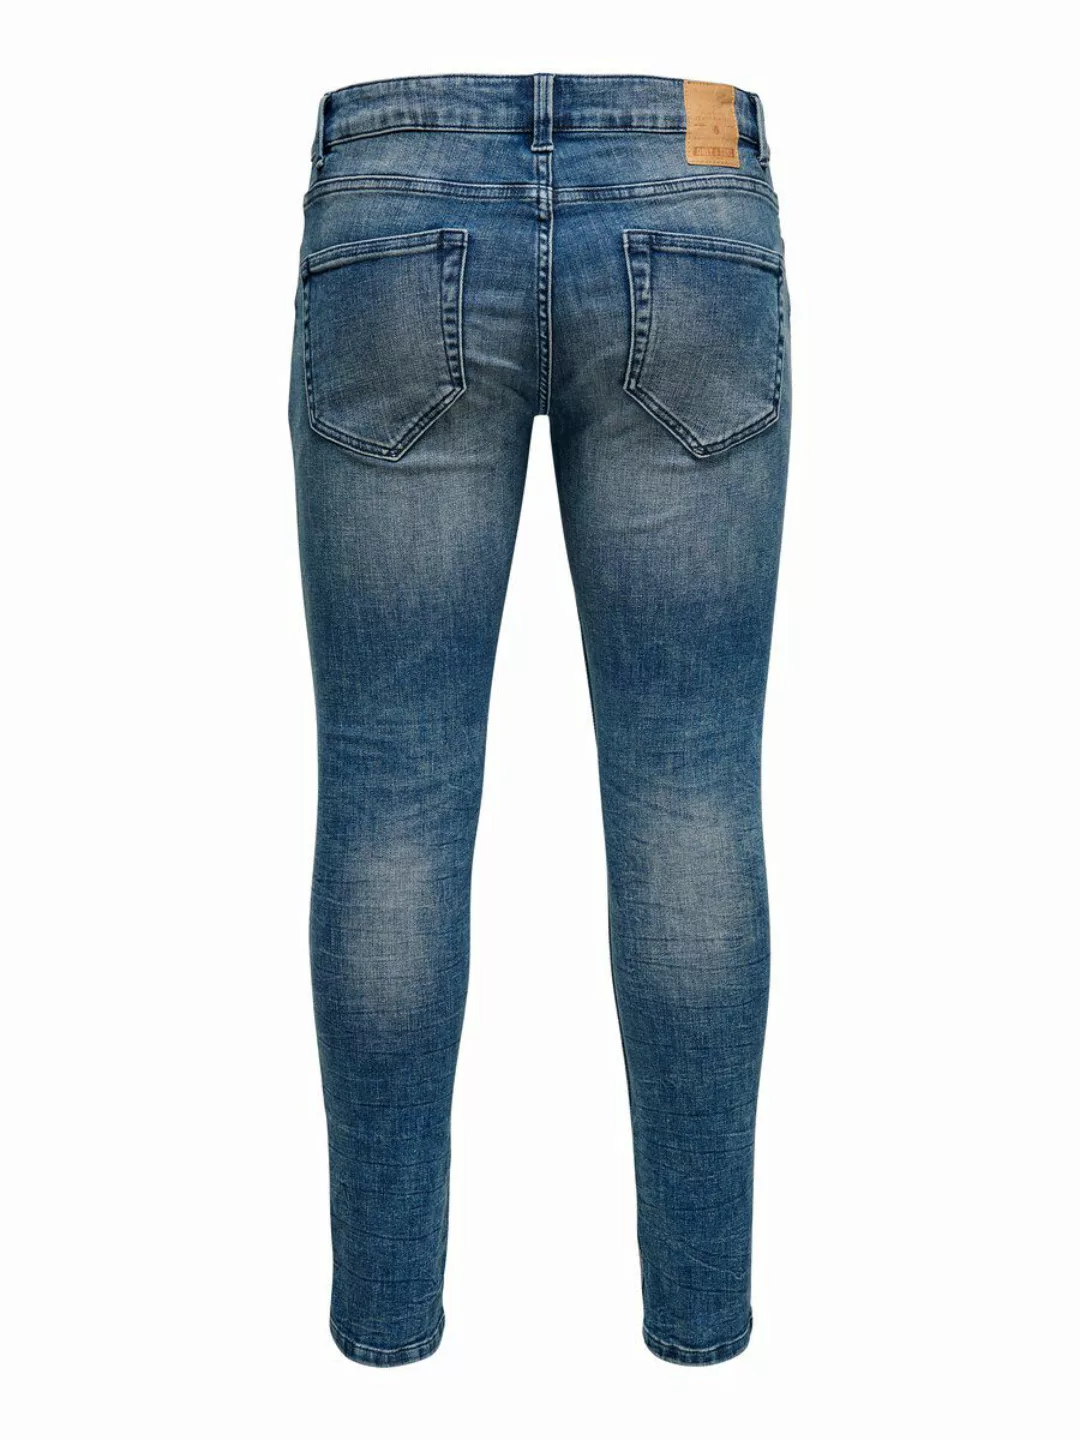 Only & Sons Warp Life Washed Pk 3621 Jeans 36 Blue Denim günstig online kaufen